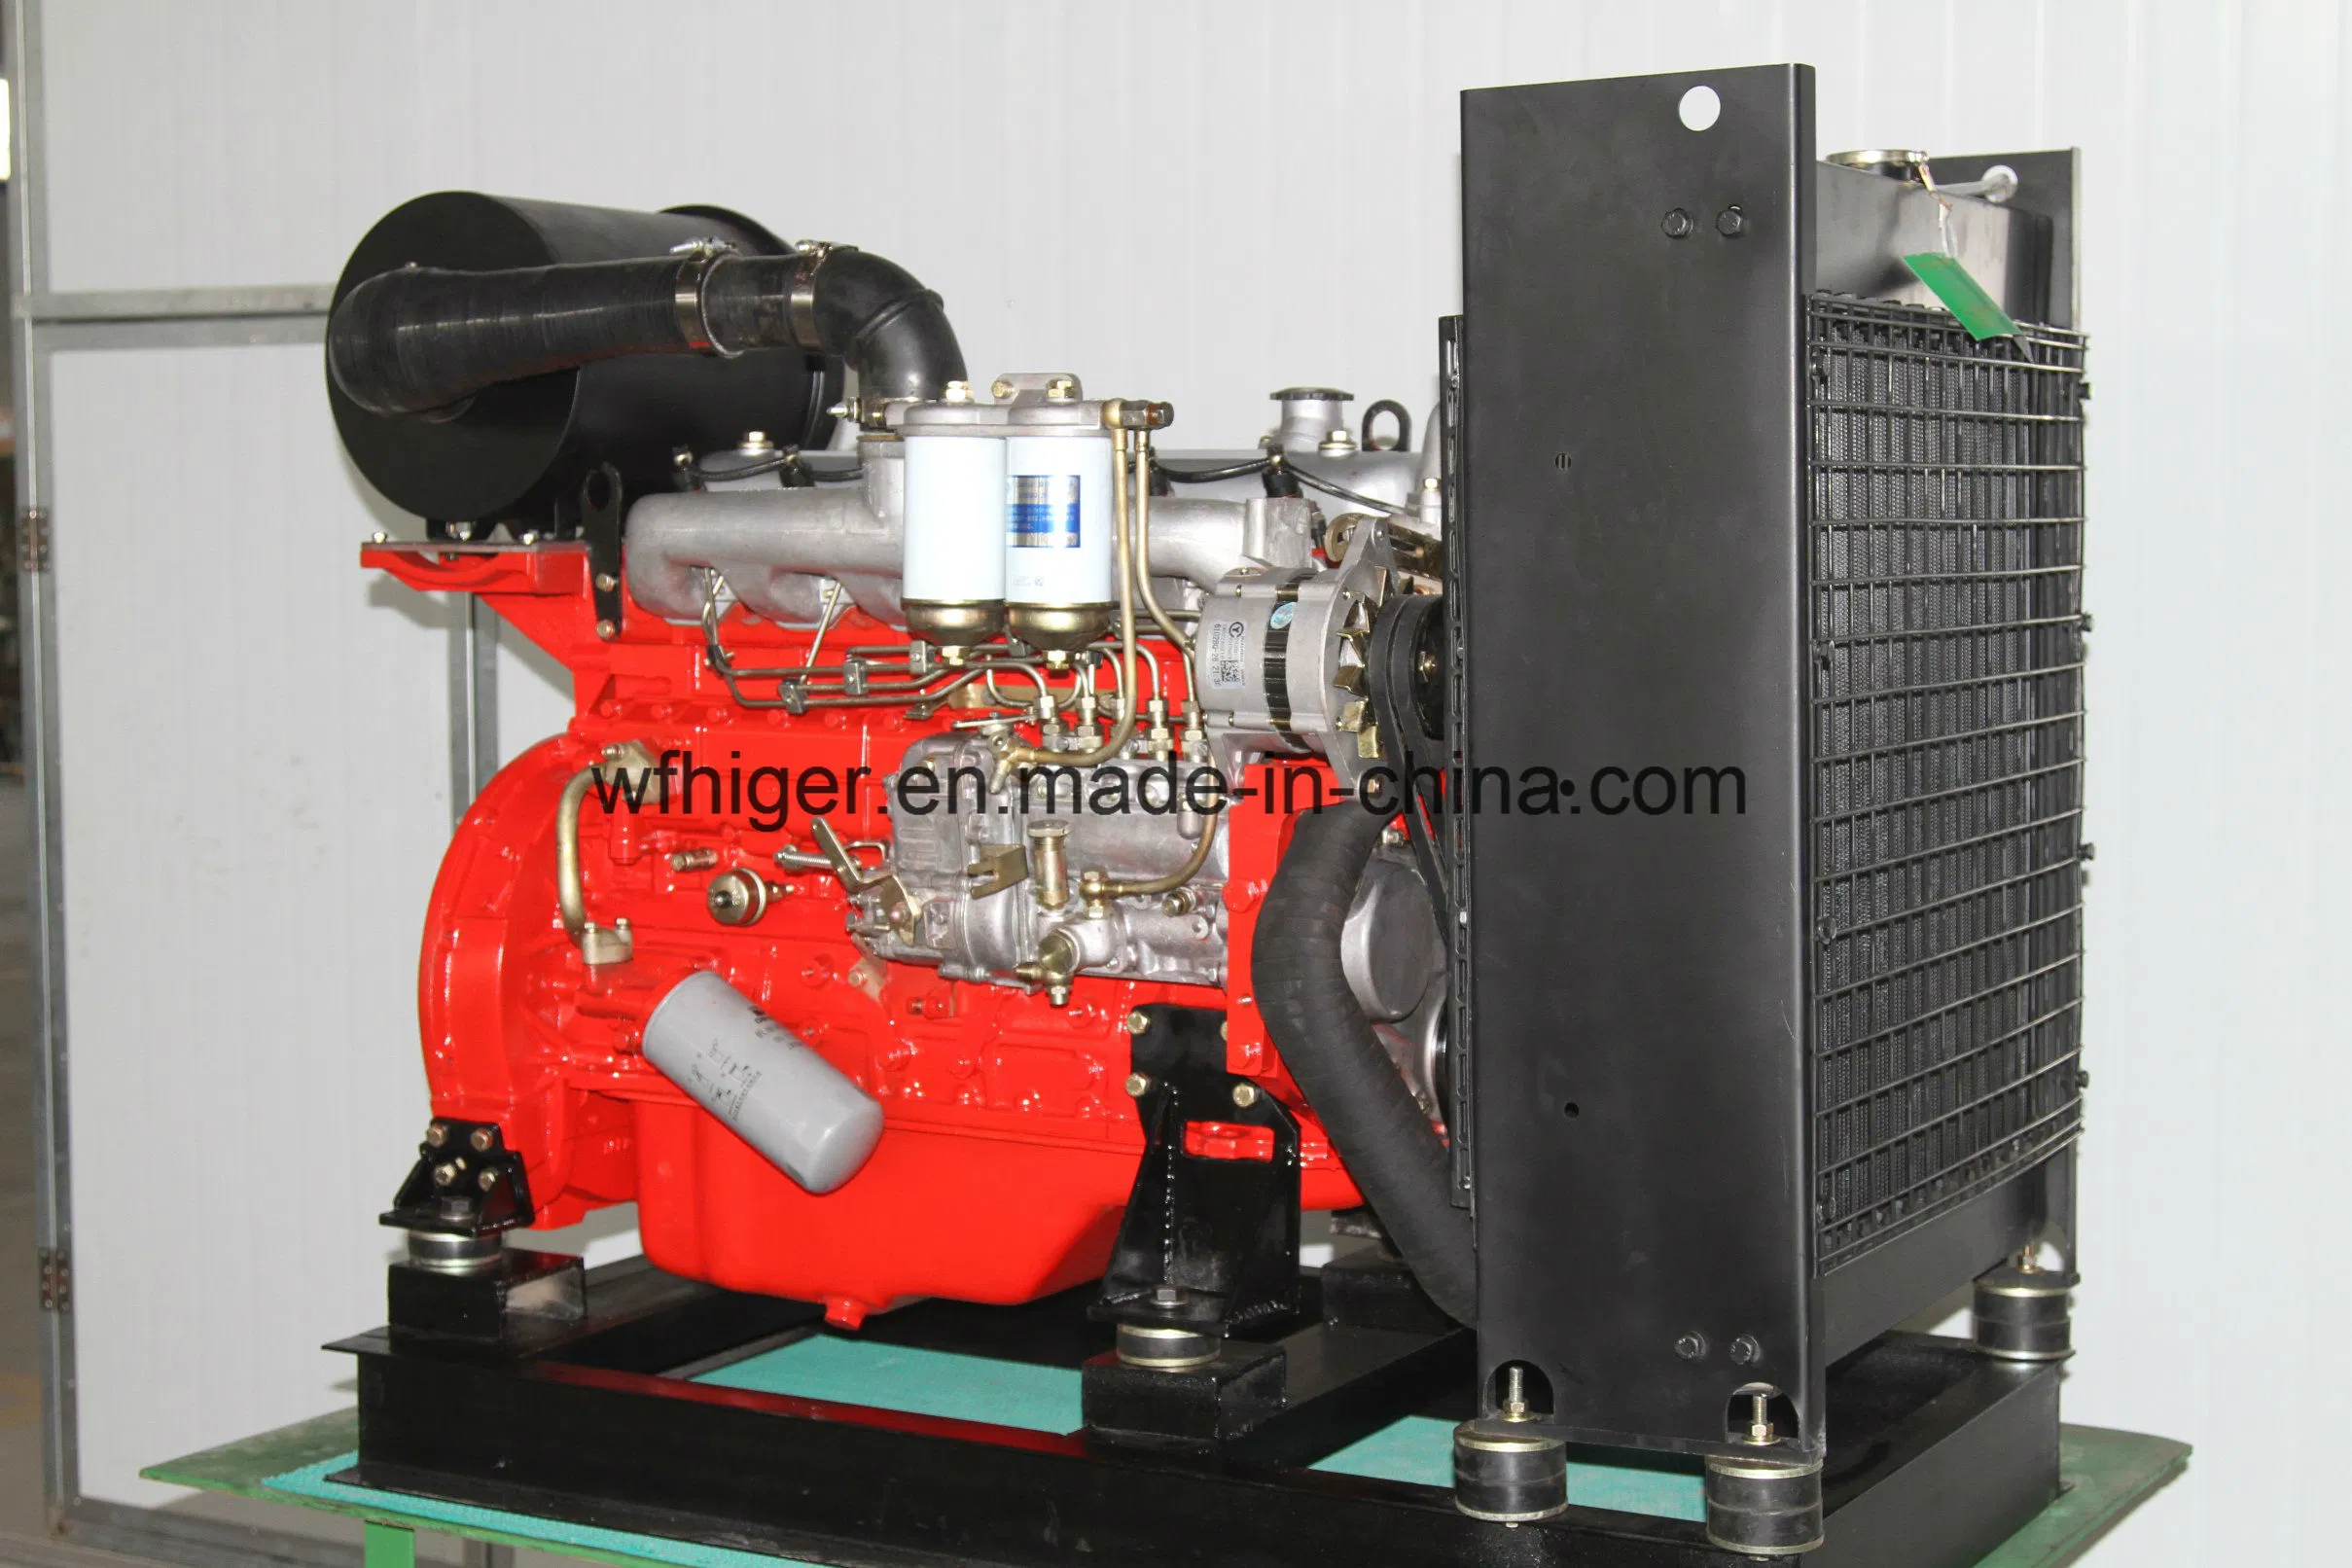 Moteur diesel de technologie Isuzu pour générateur/pompe à eau/pompe à incendie 4ja1, 4jb1, 4bd, 6bd, 6tw